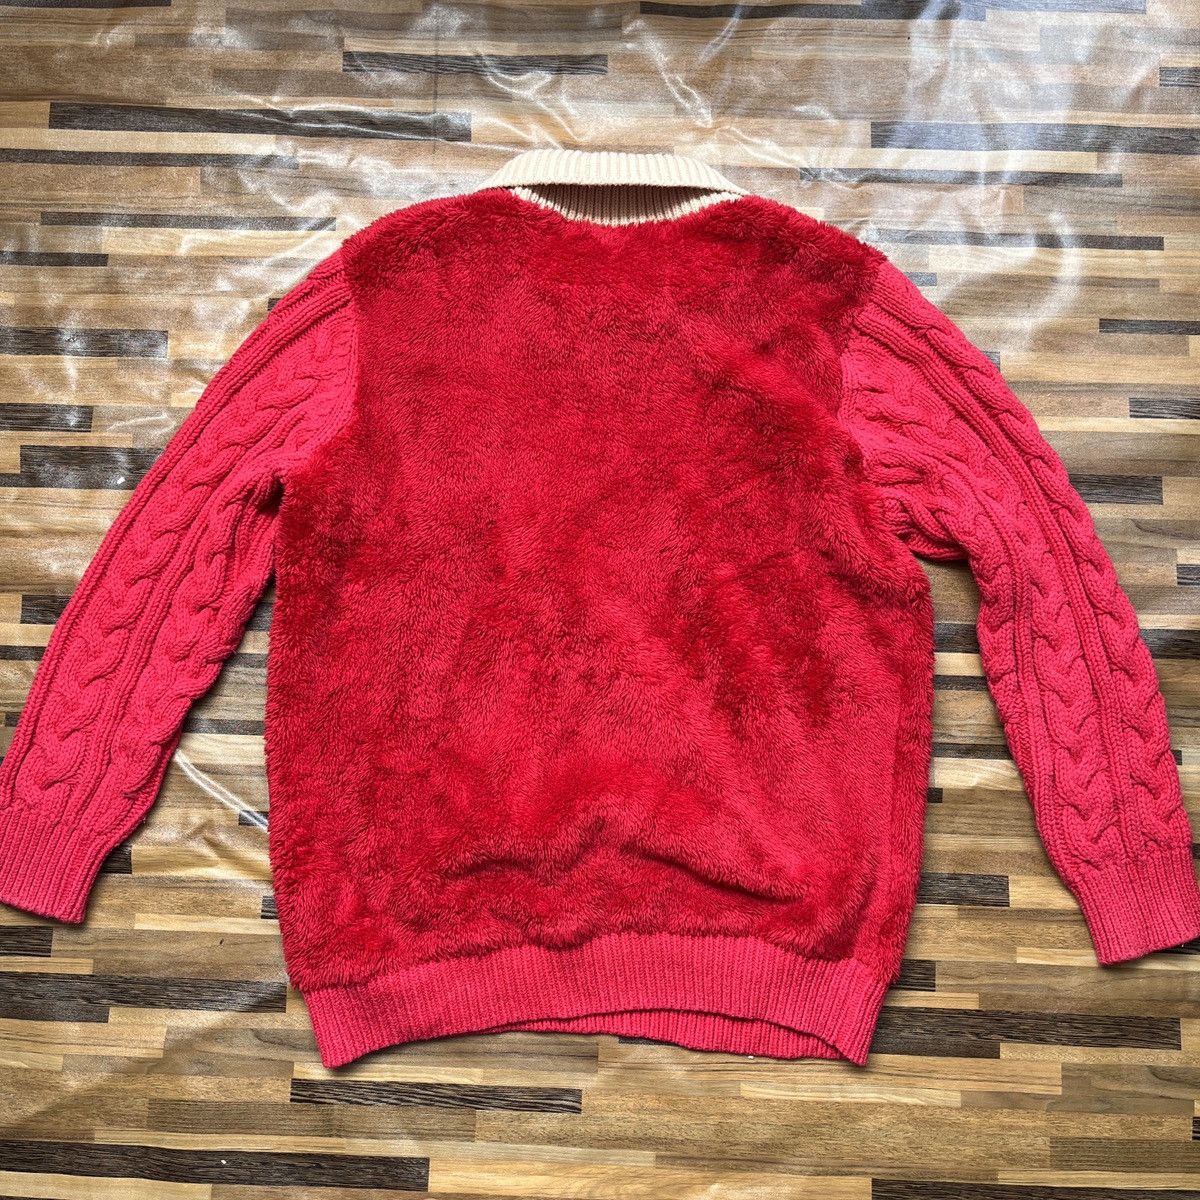 Undercover X Uniqlo Sweater Rare Red Colour - 18